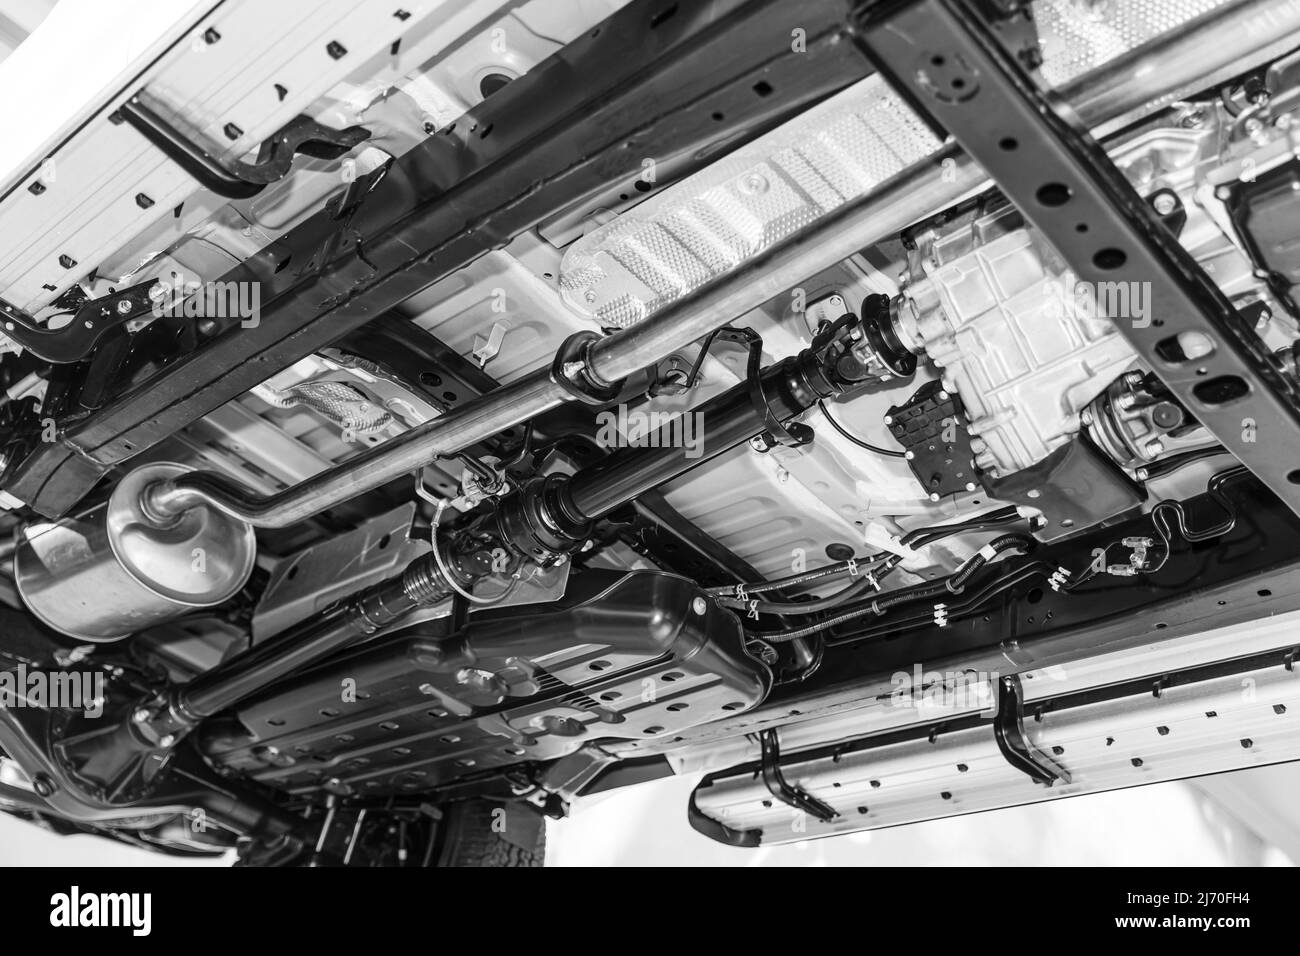 Unter dem Fahrgestell, der Antriebswelle des Lkw und dem Schalldämpfersystem der Auspuffkammer Stockfoto